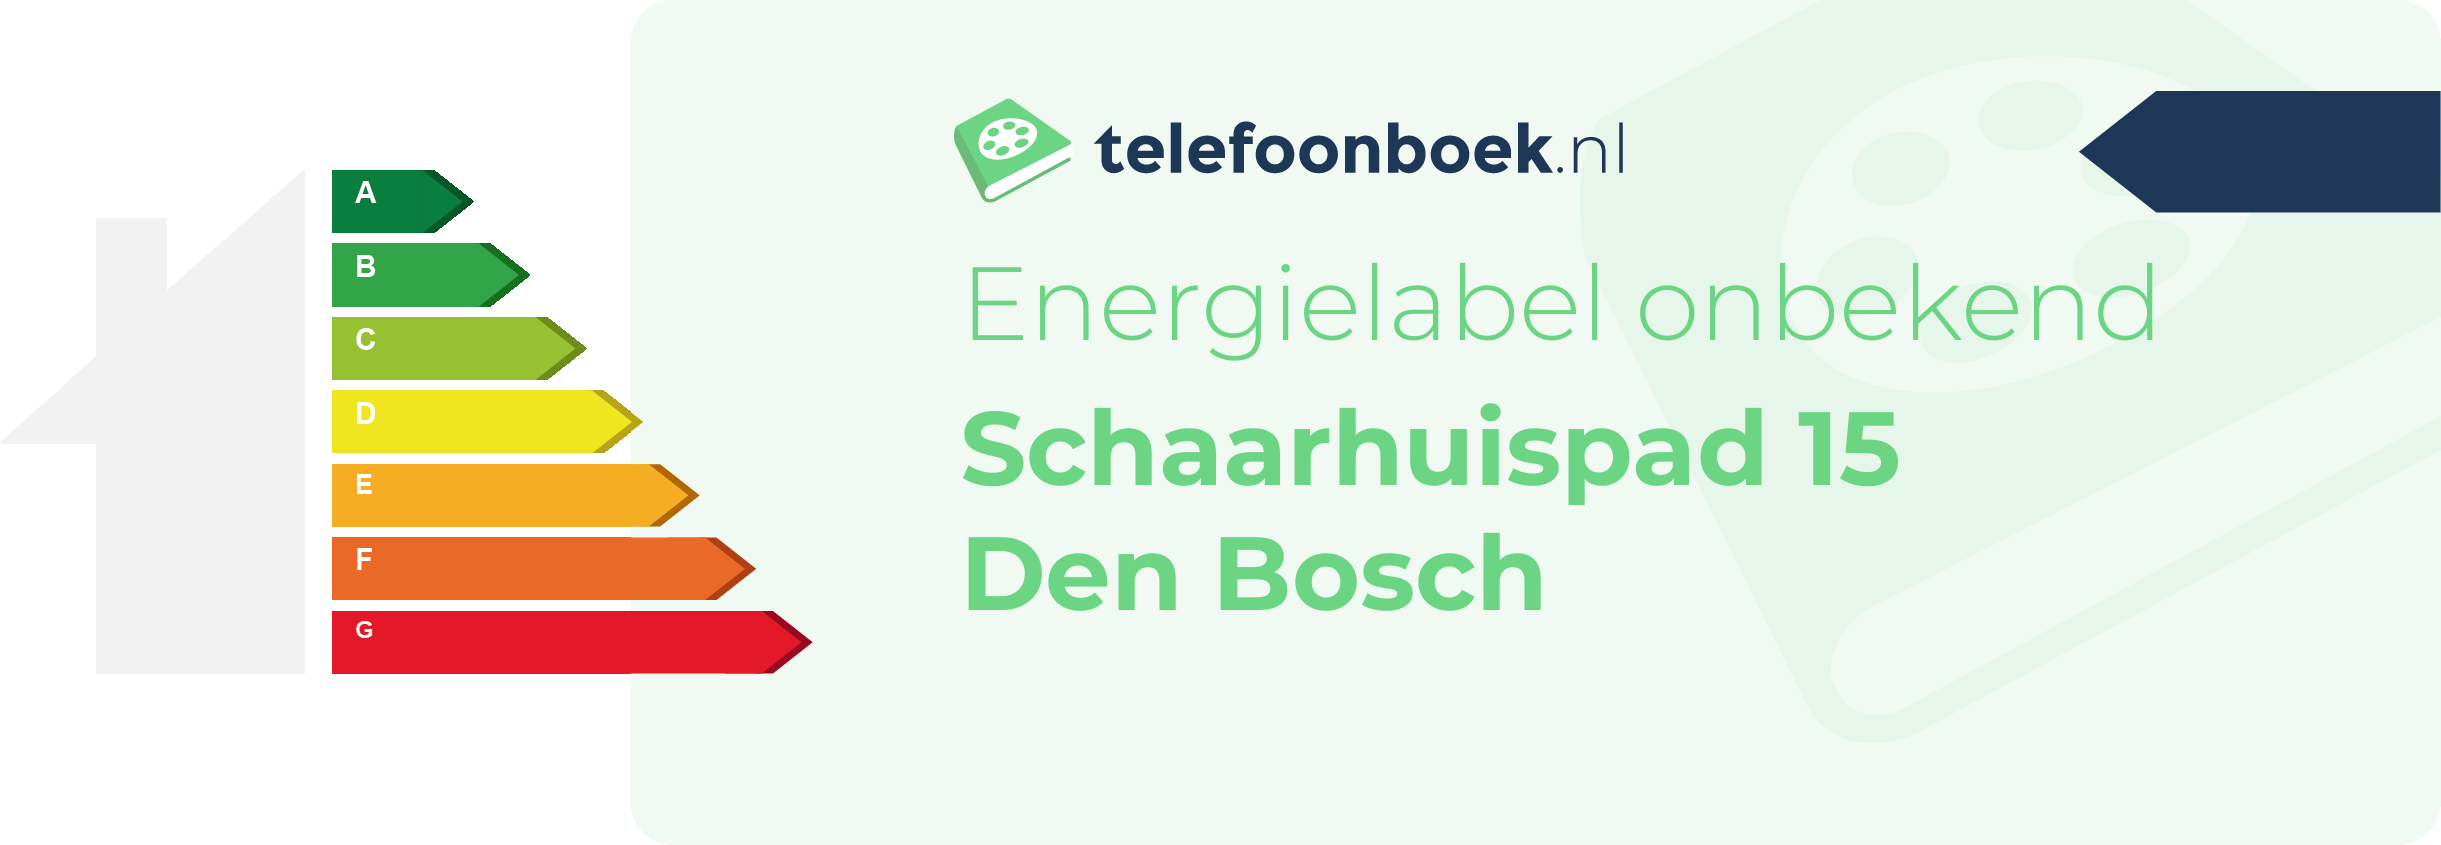 Energielabel Schaarhuispad 15 Den Bosch